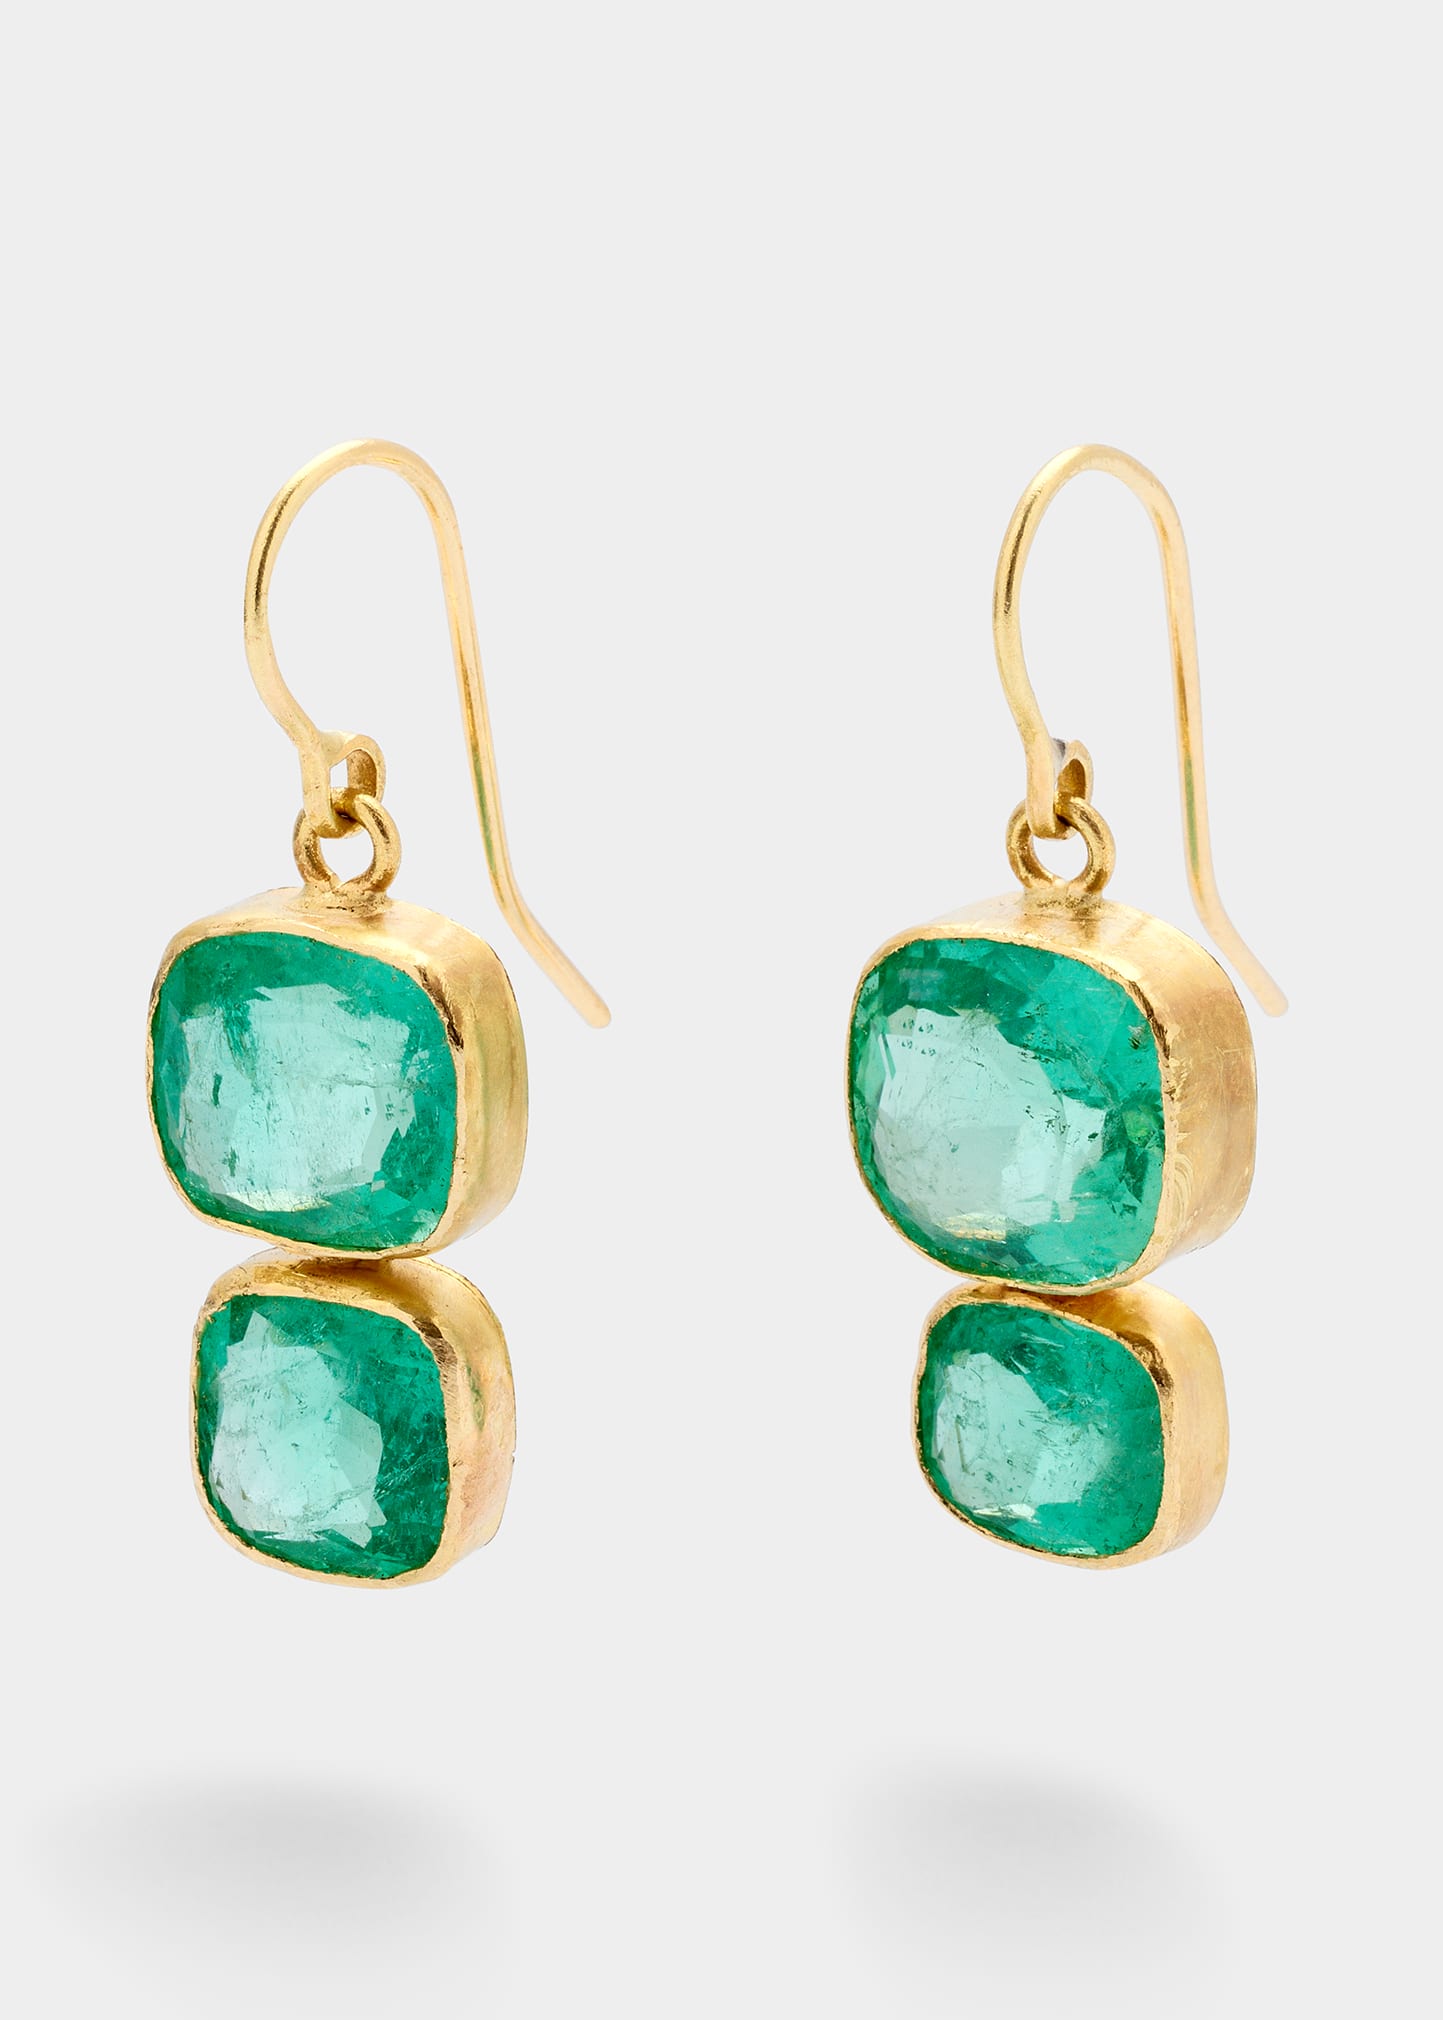 JUDY GEIB Cushion-Cut Colombian Emerald Double Drop Earrings in 18K Gold